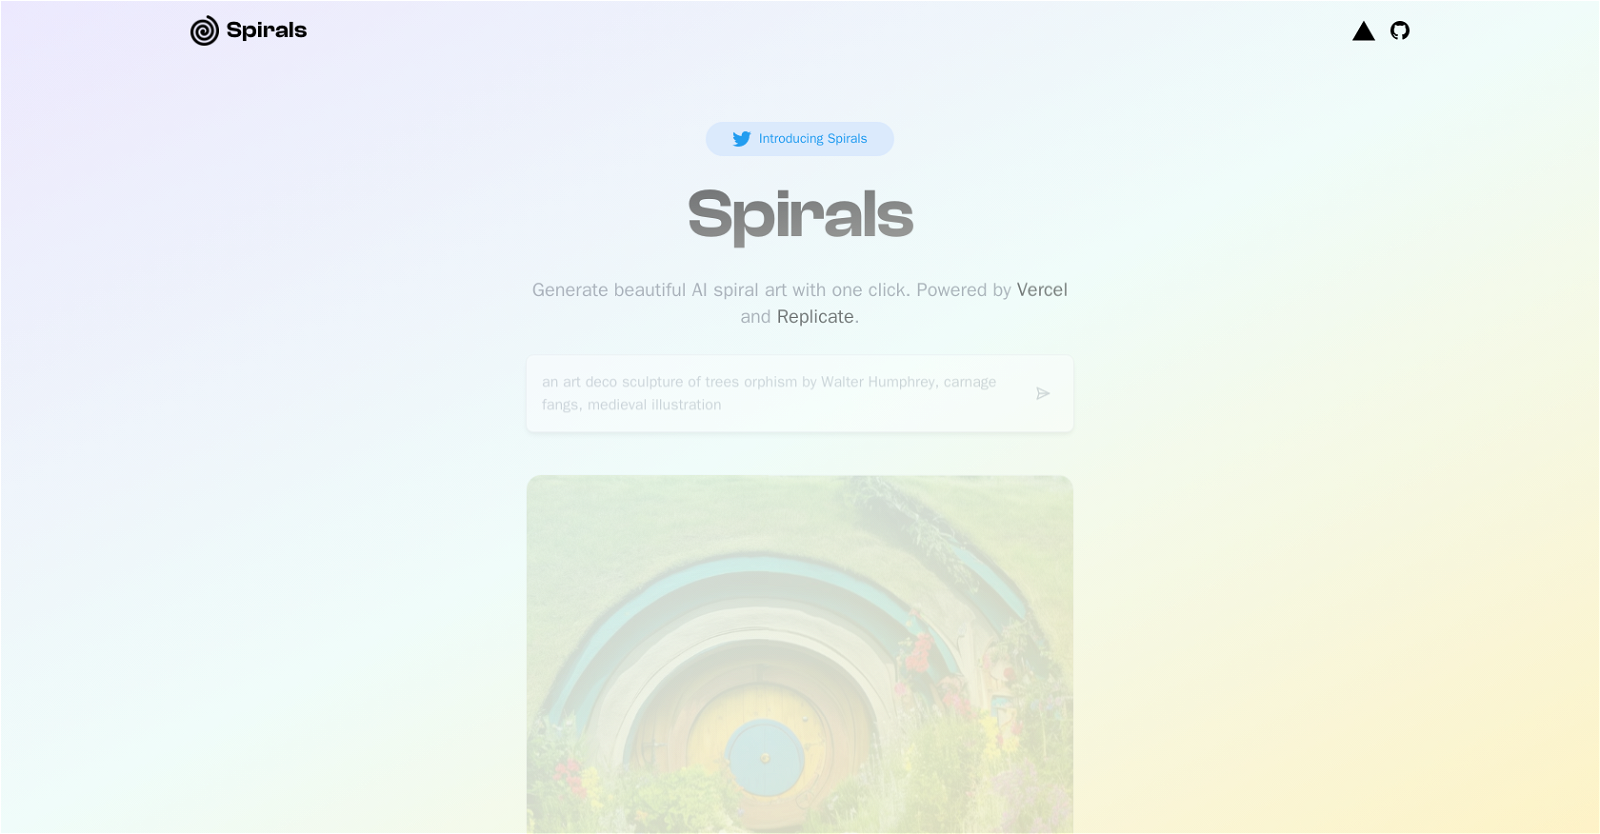 Spirals website